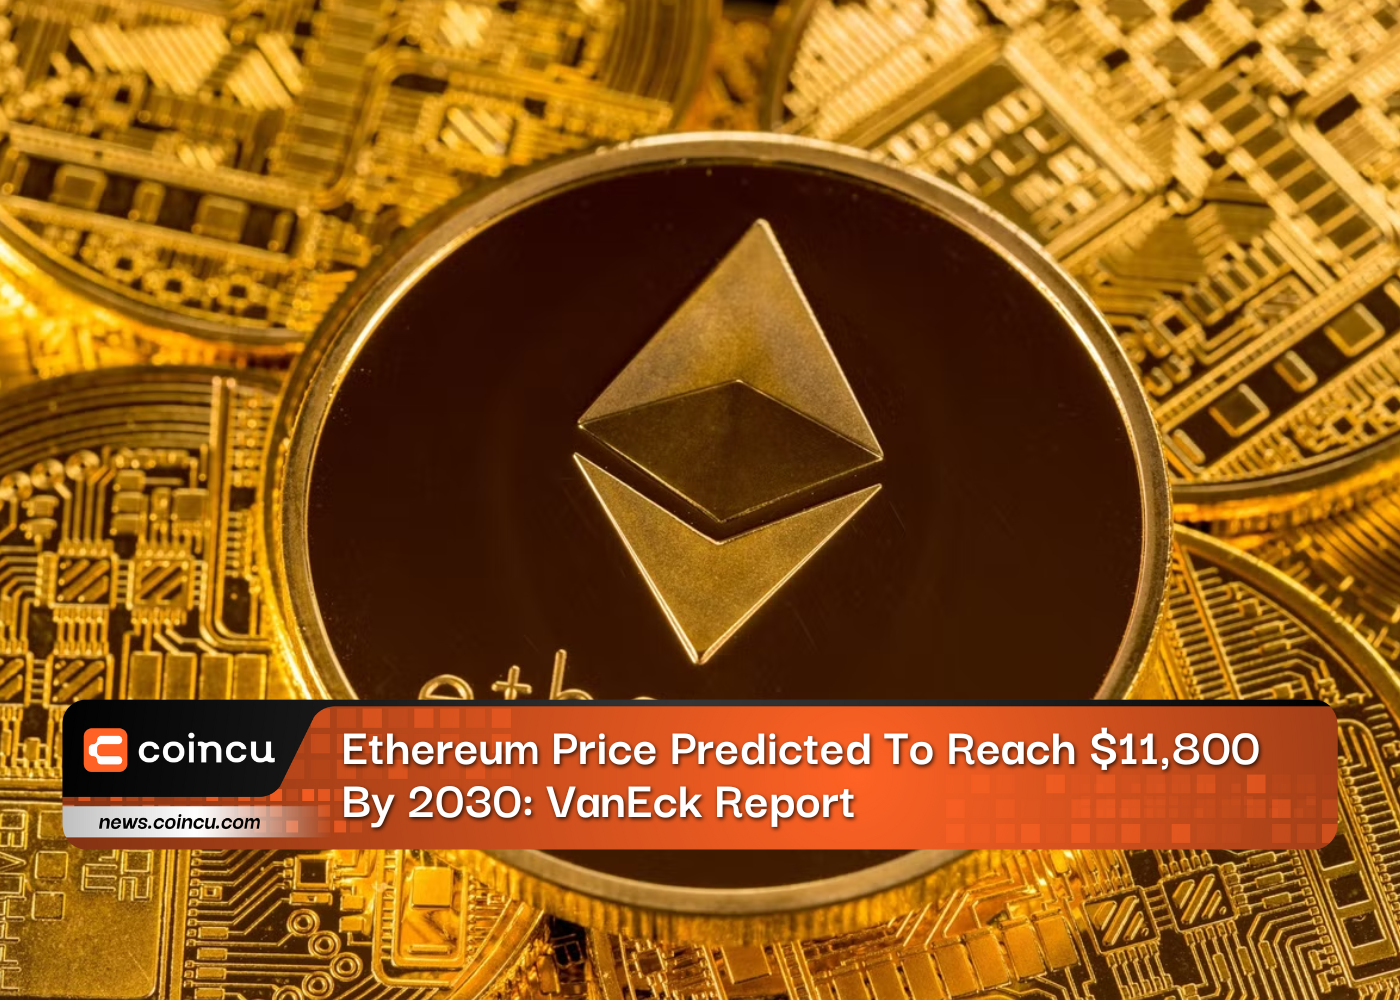 Se prevé que el precio de Ethereum alcance los $ 11,800 para 2030: Informe VanEck